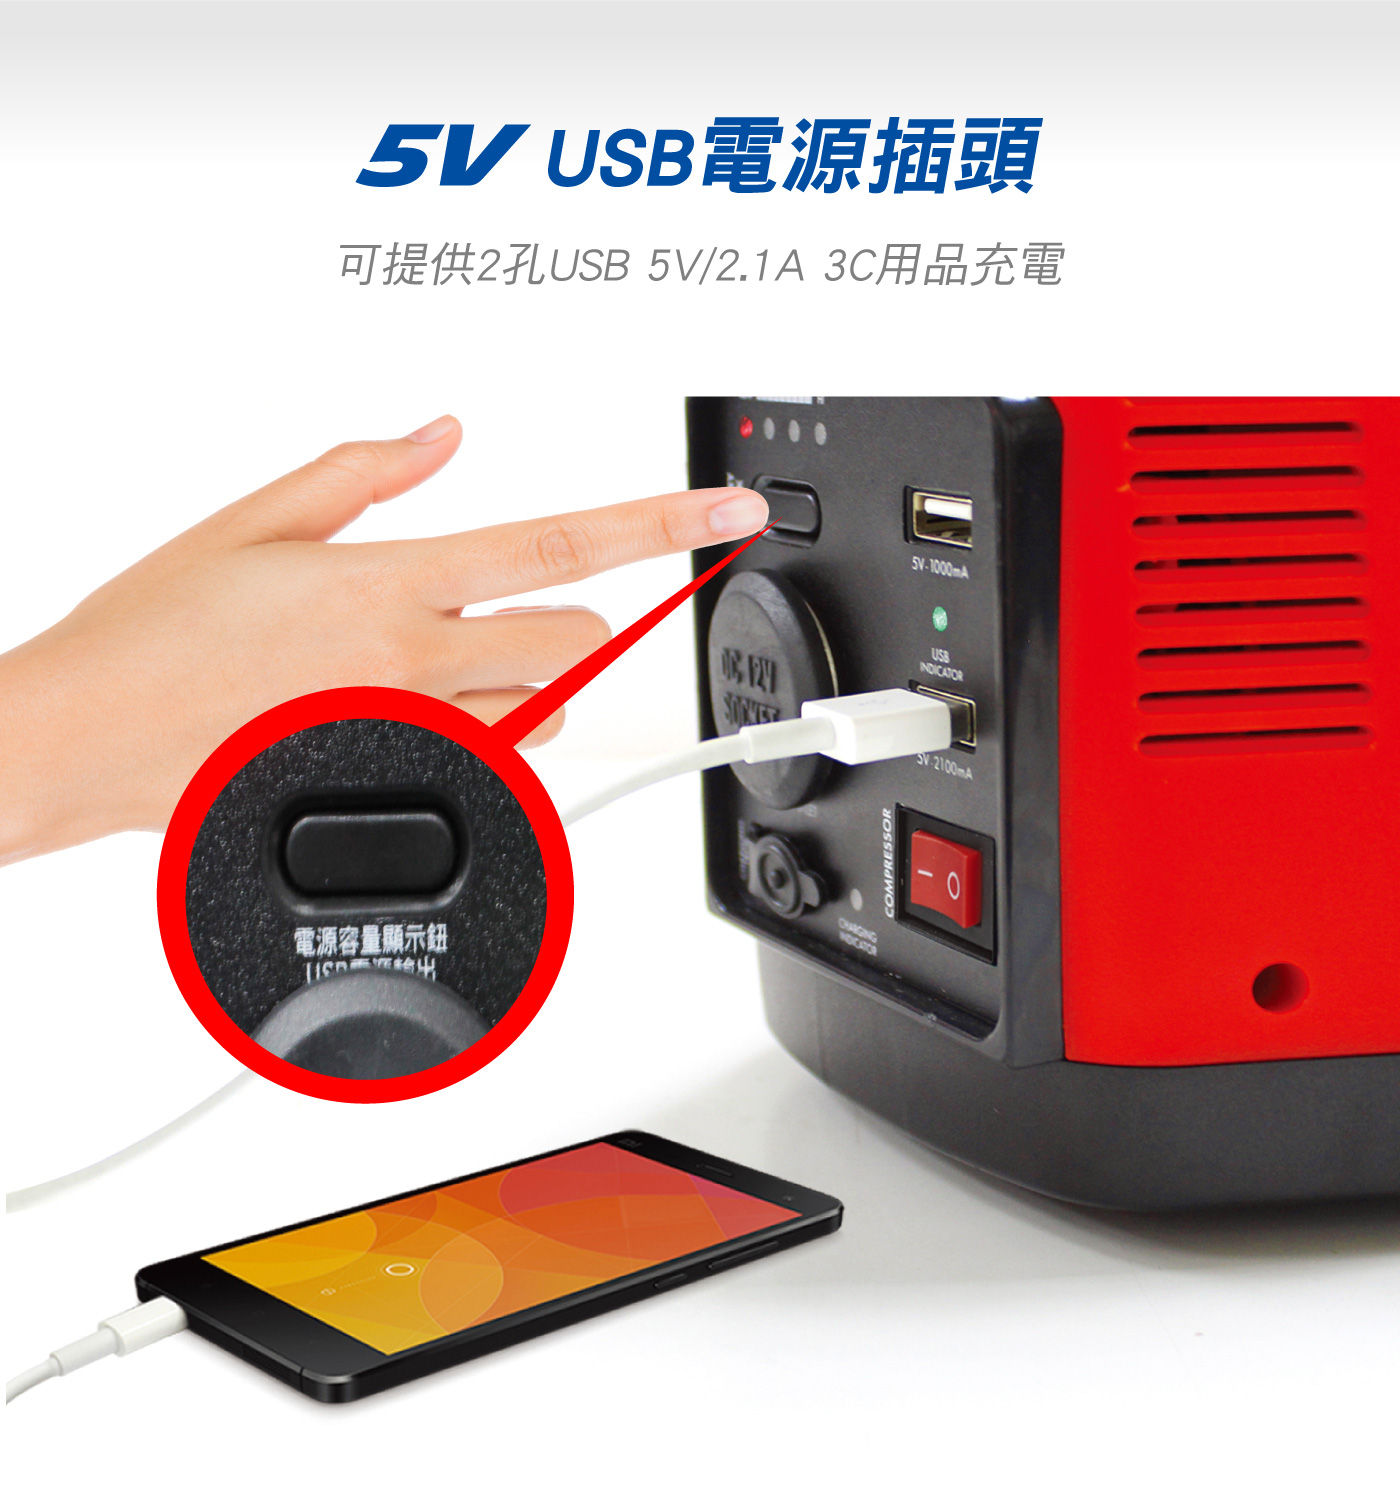 米寶 五合一電源供應器可提供2孔USB/5V2.1A 3C用品充電